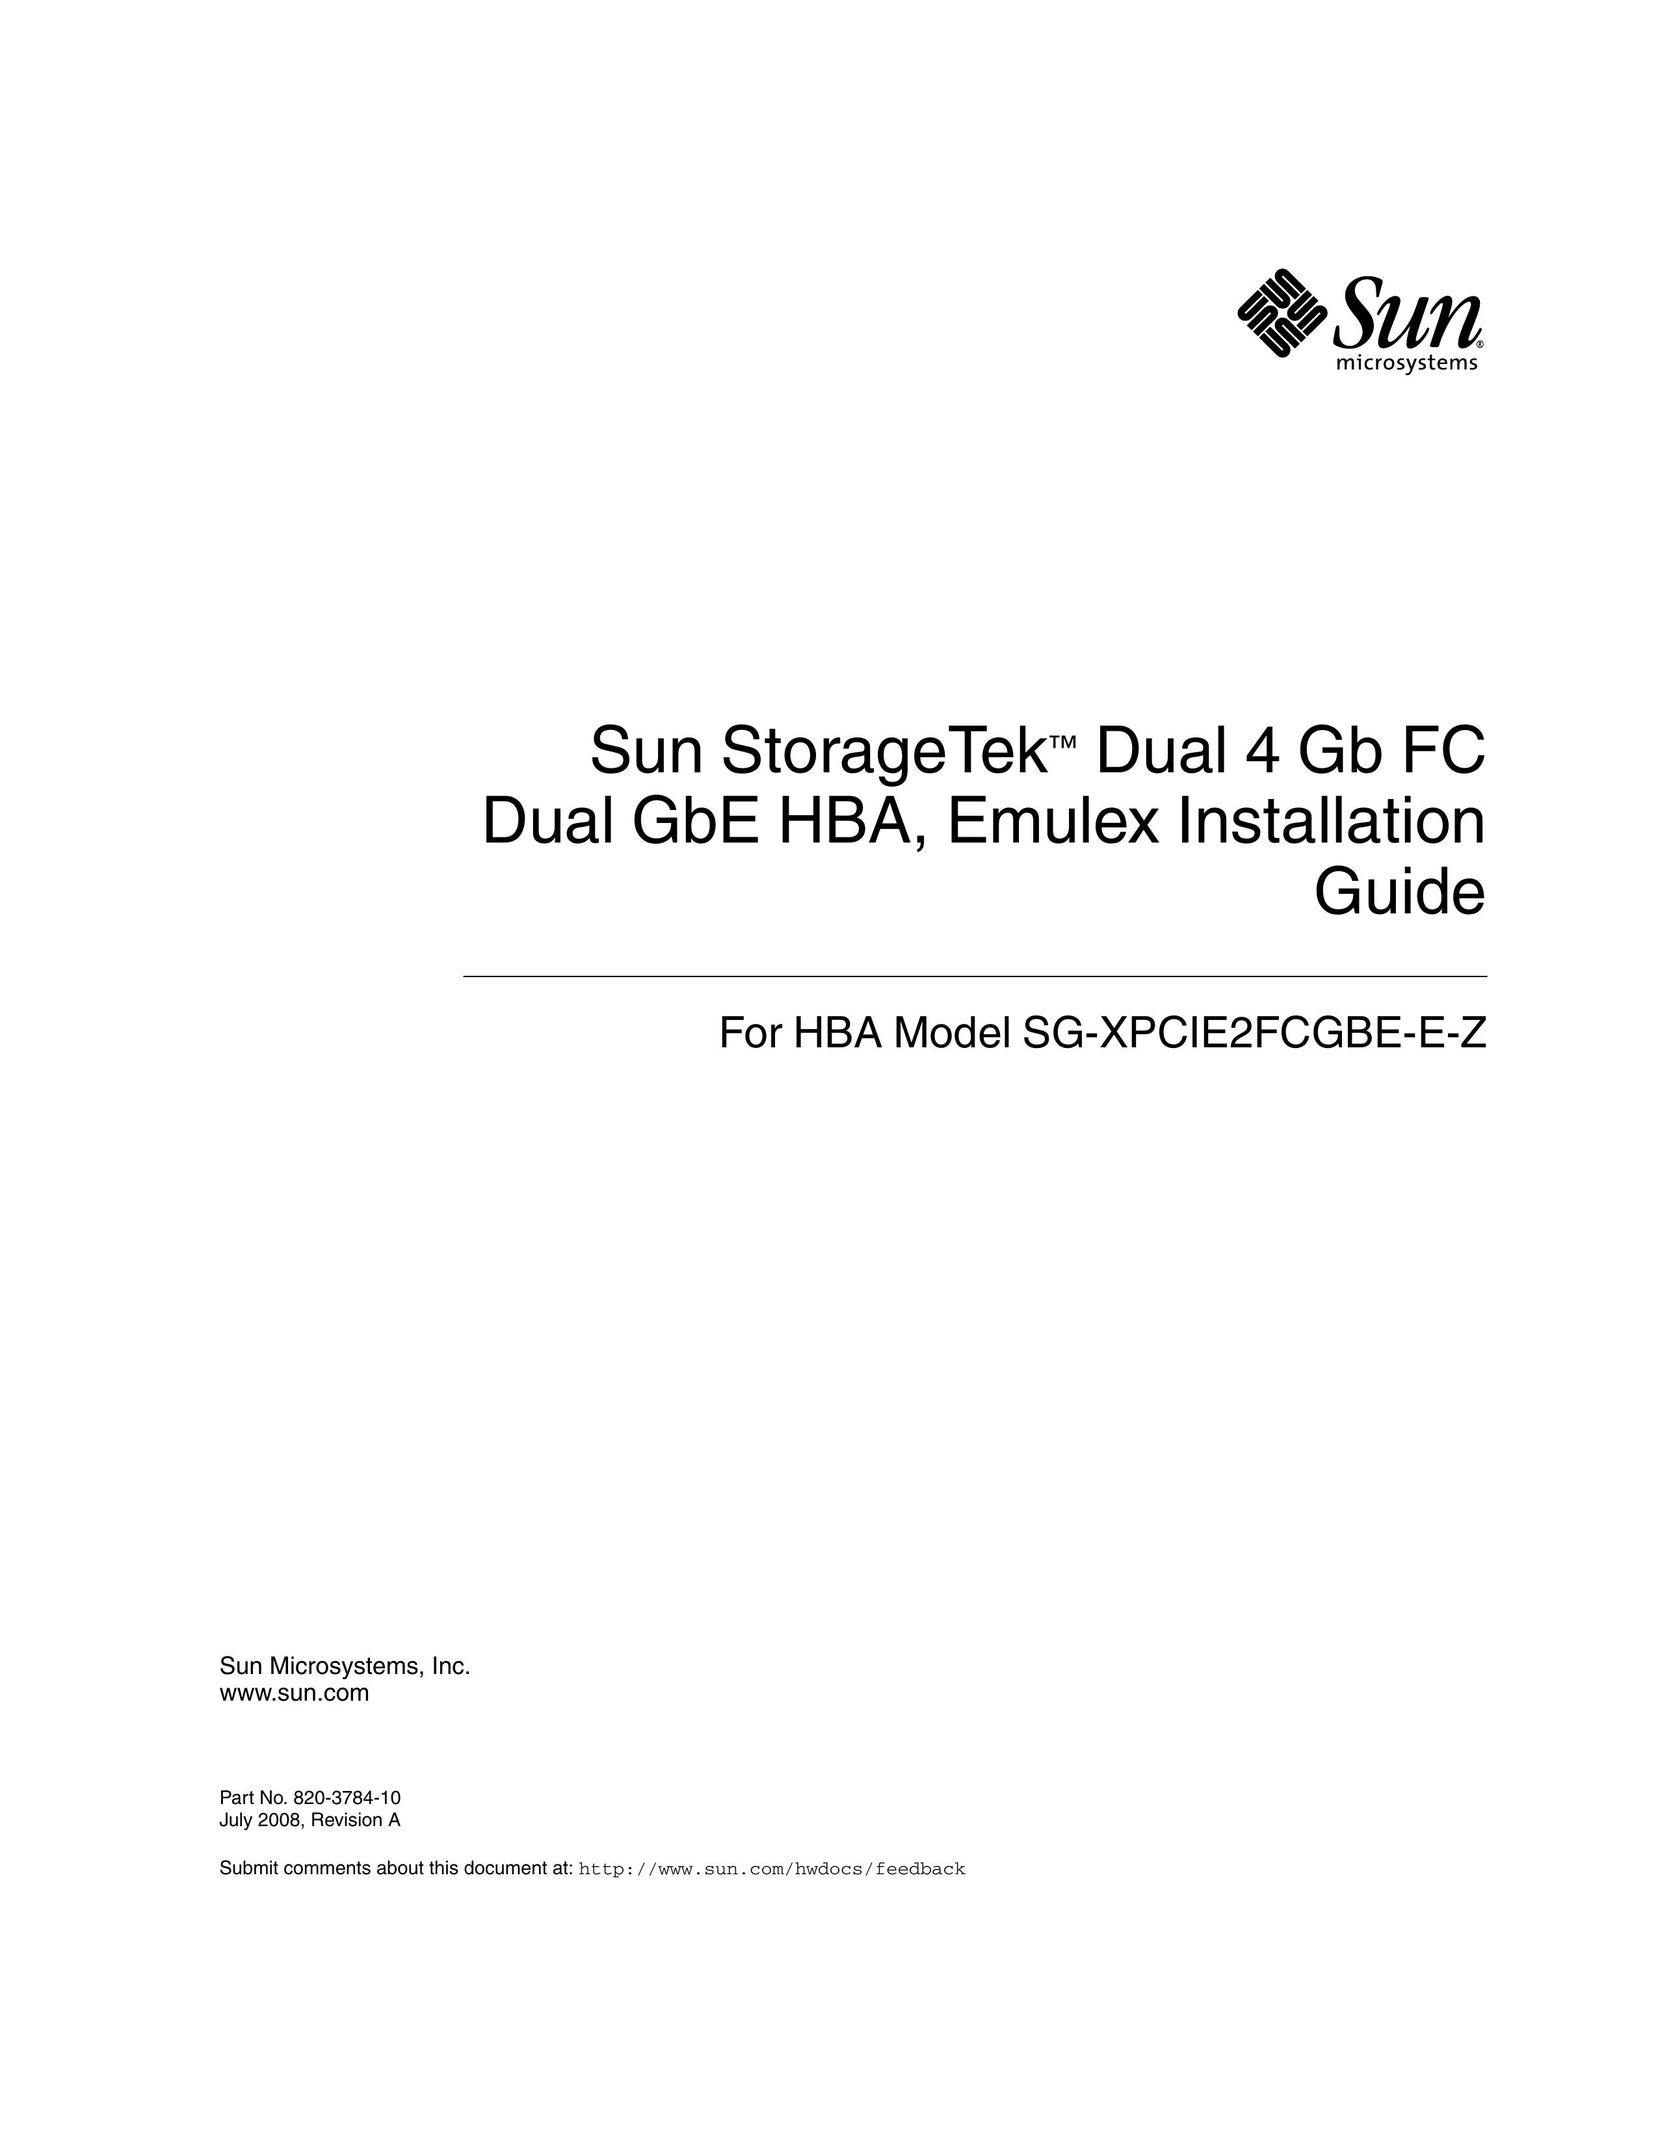 Sun Microsystems SG-XPCIE2FCGBE-E-Z Network Card User Manual